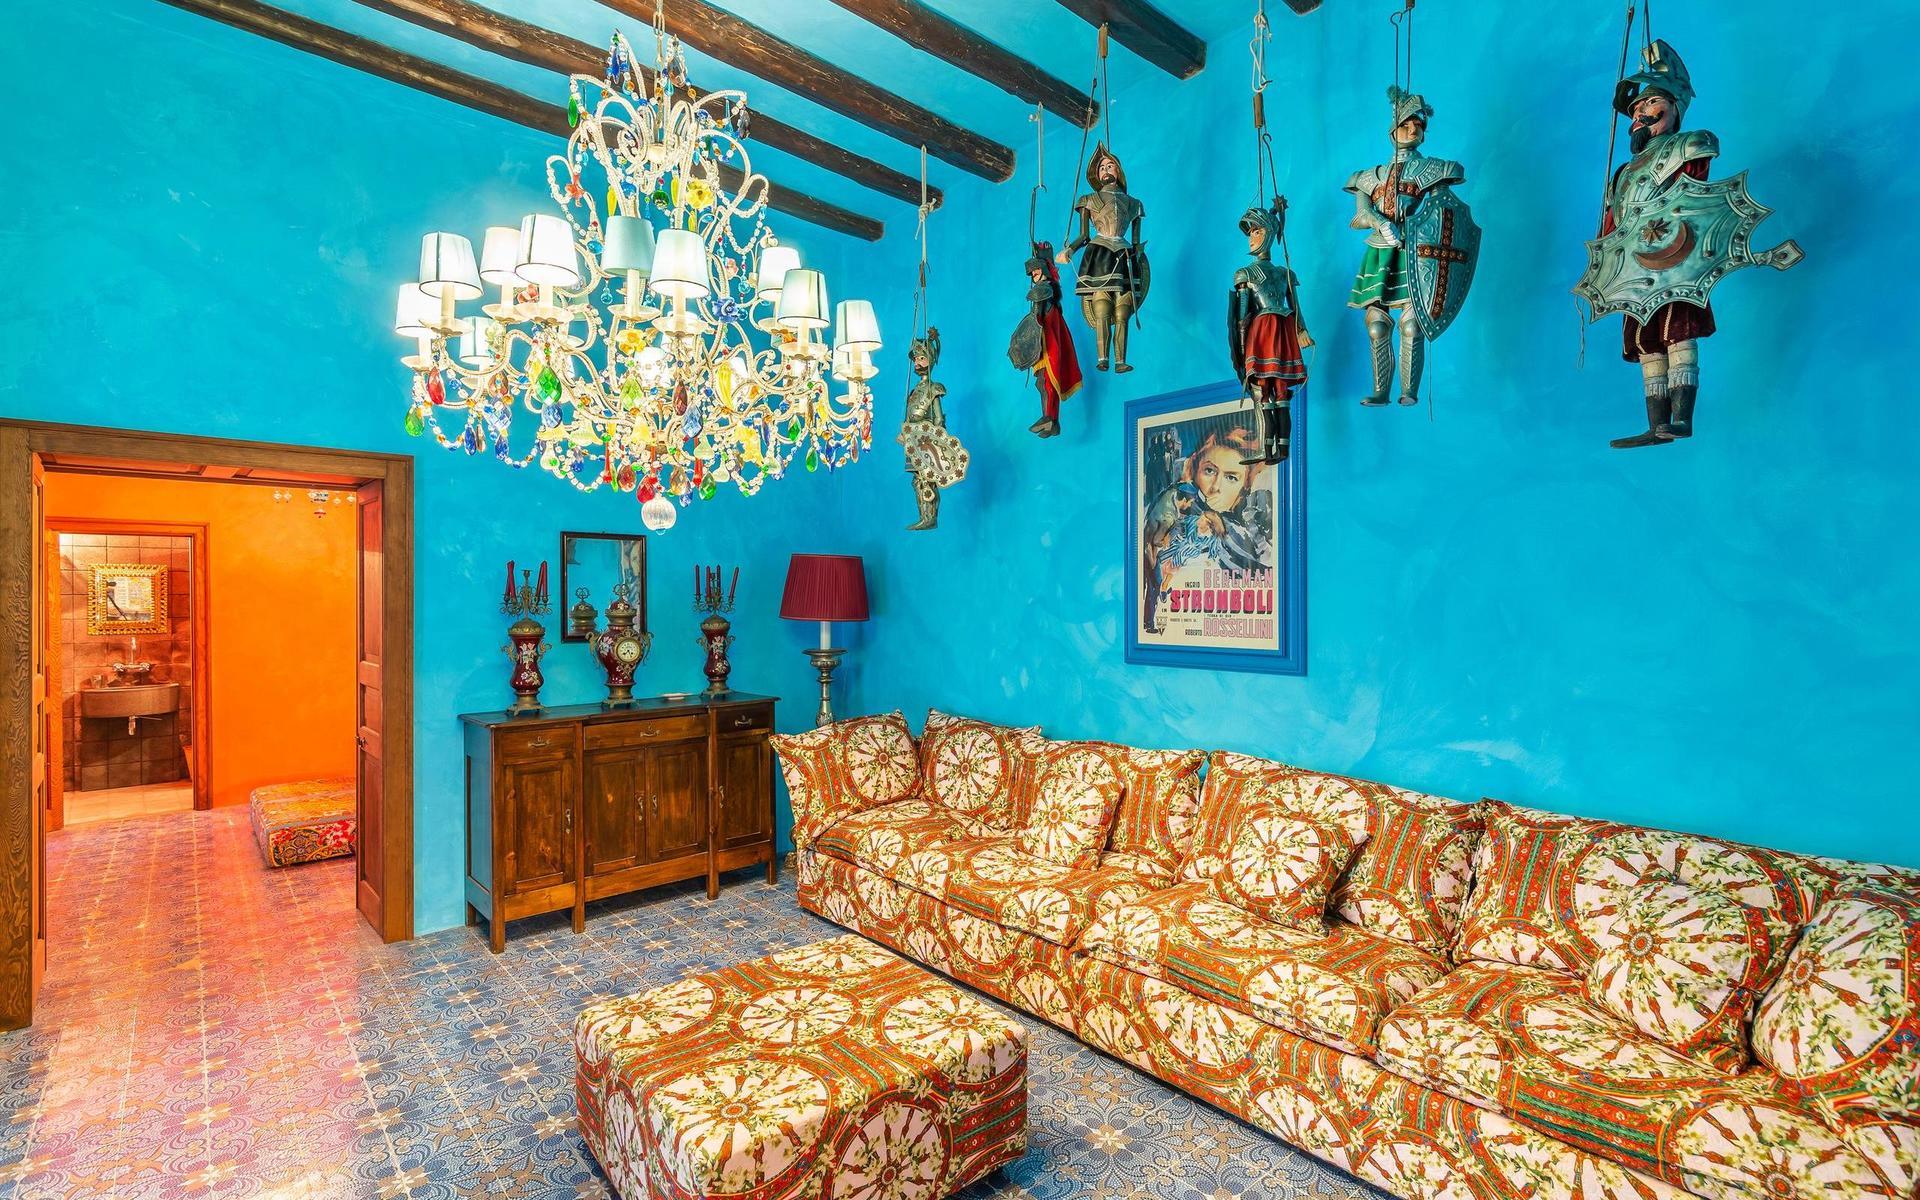 Det blå vardagsrummet med angränsande terrakottafärgat badrum.